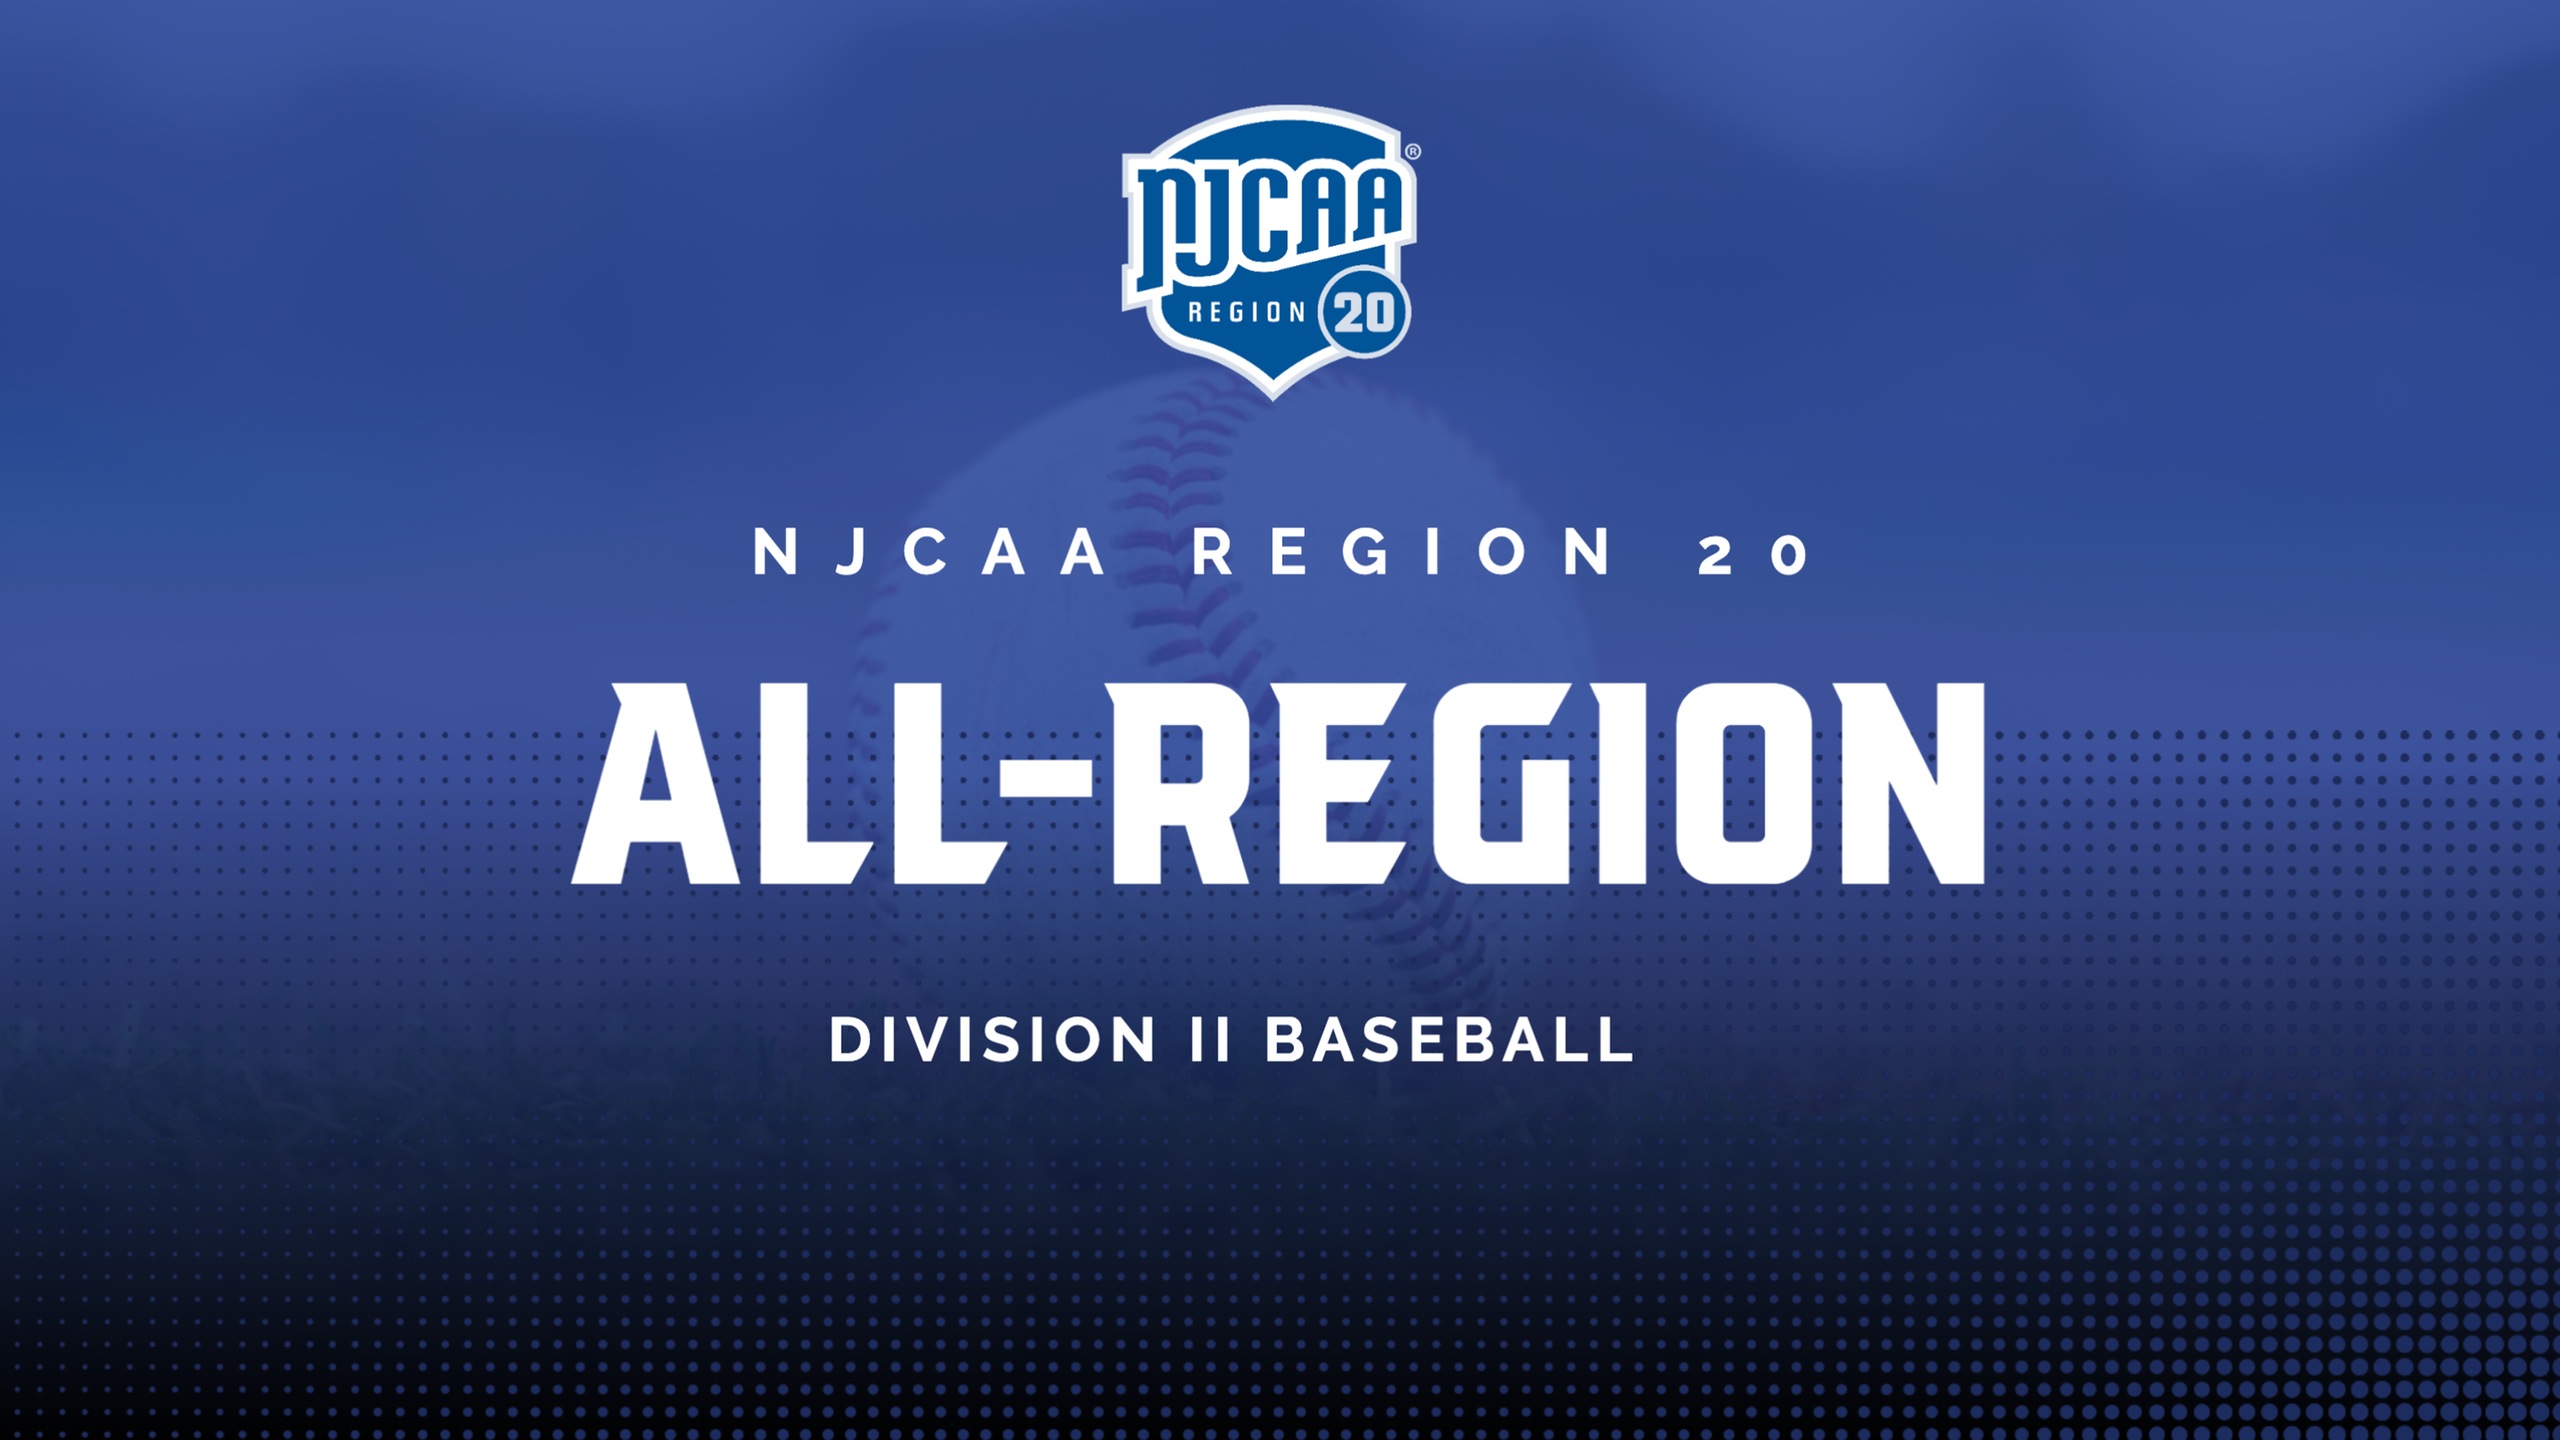 All-Region 20 Division II Baseball Team Announced